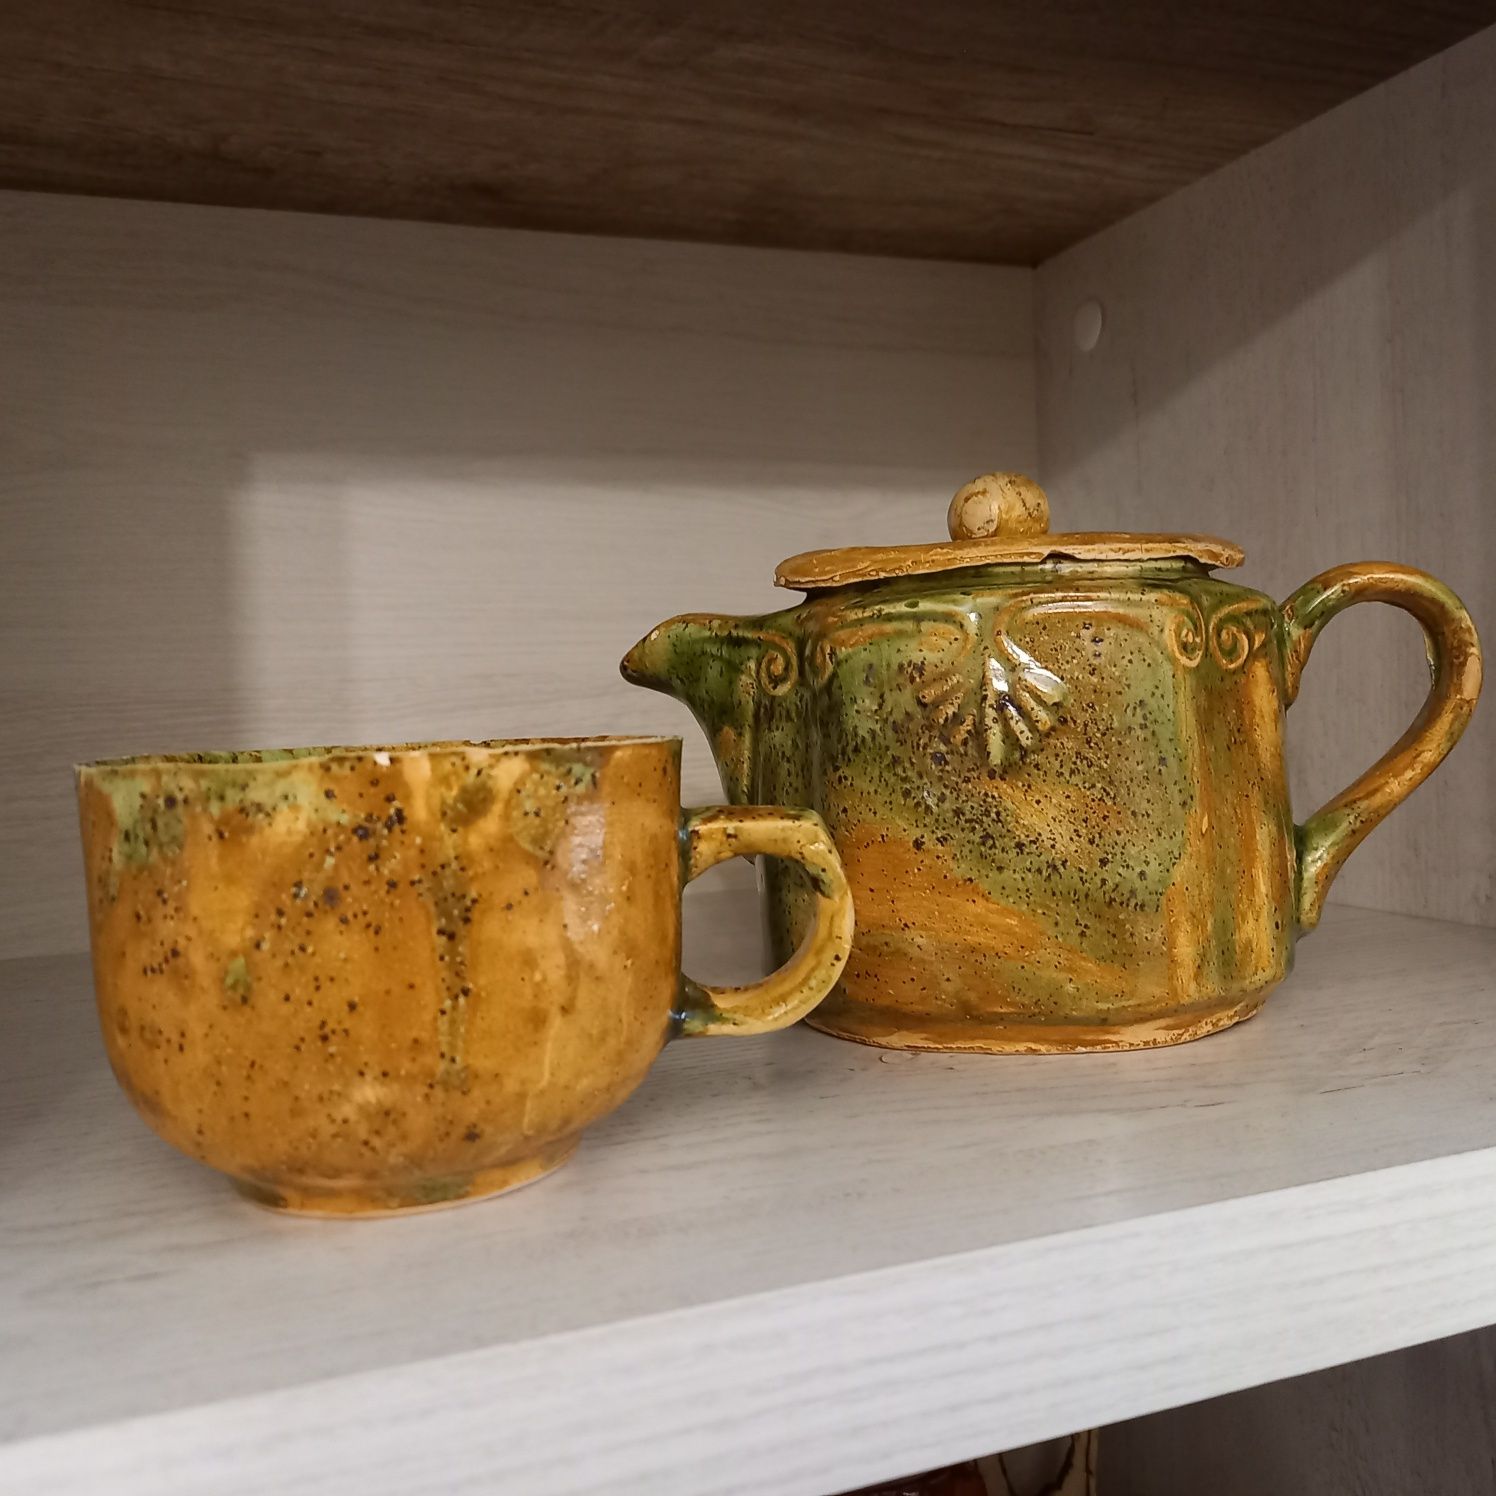 Oryginalny ceramiczny zestaw ozdób